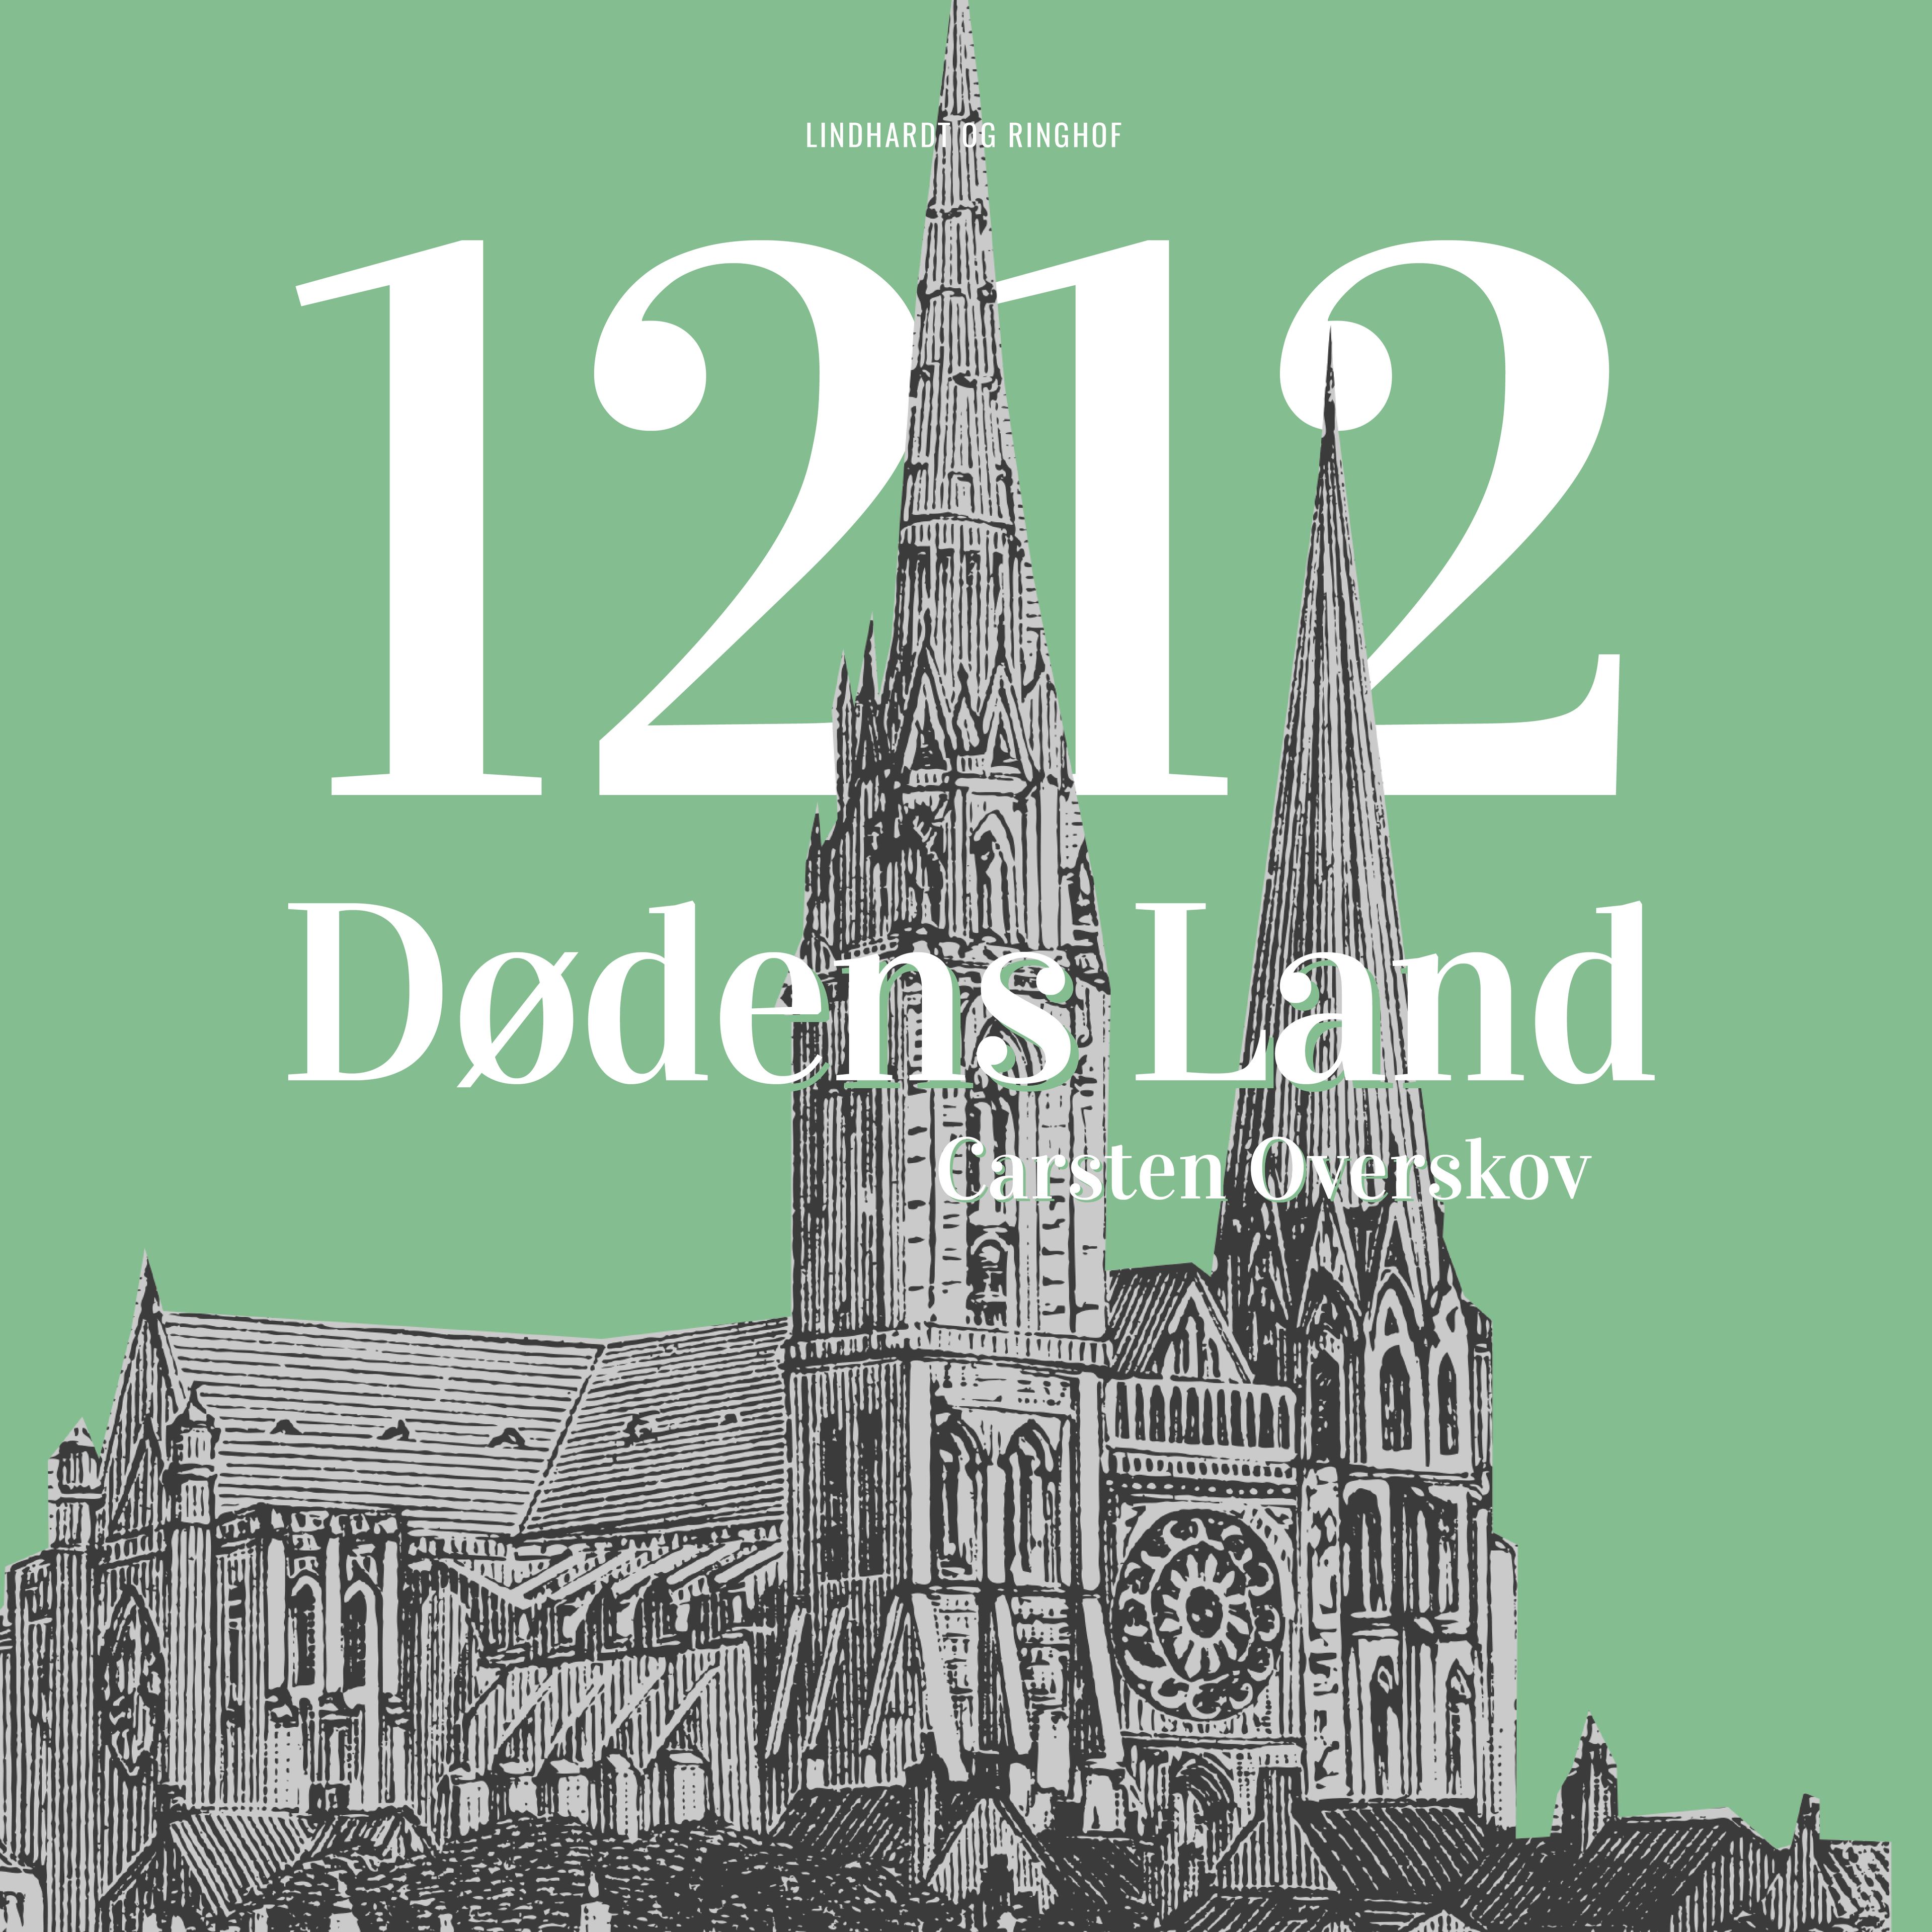 1212 Dødens land, lydbog af Carsten Overskov